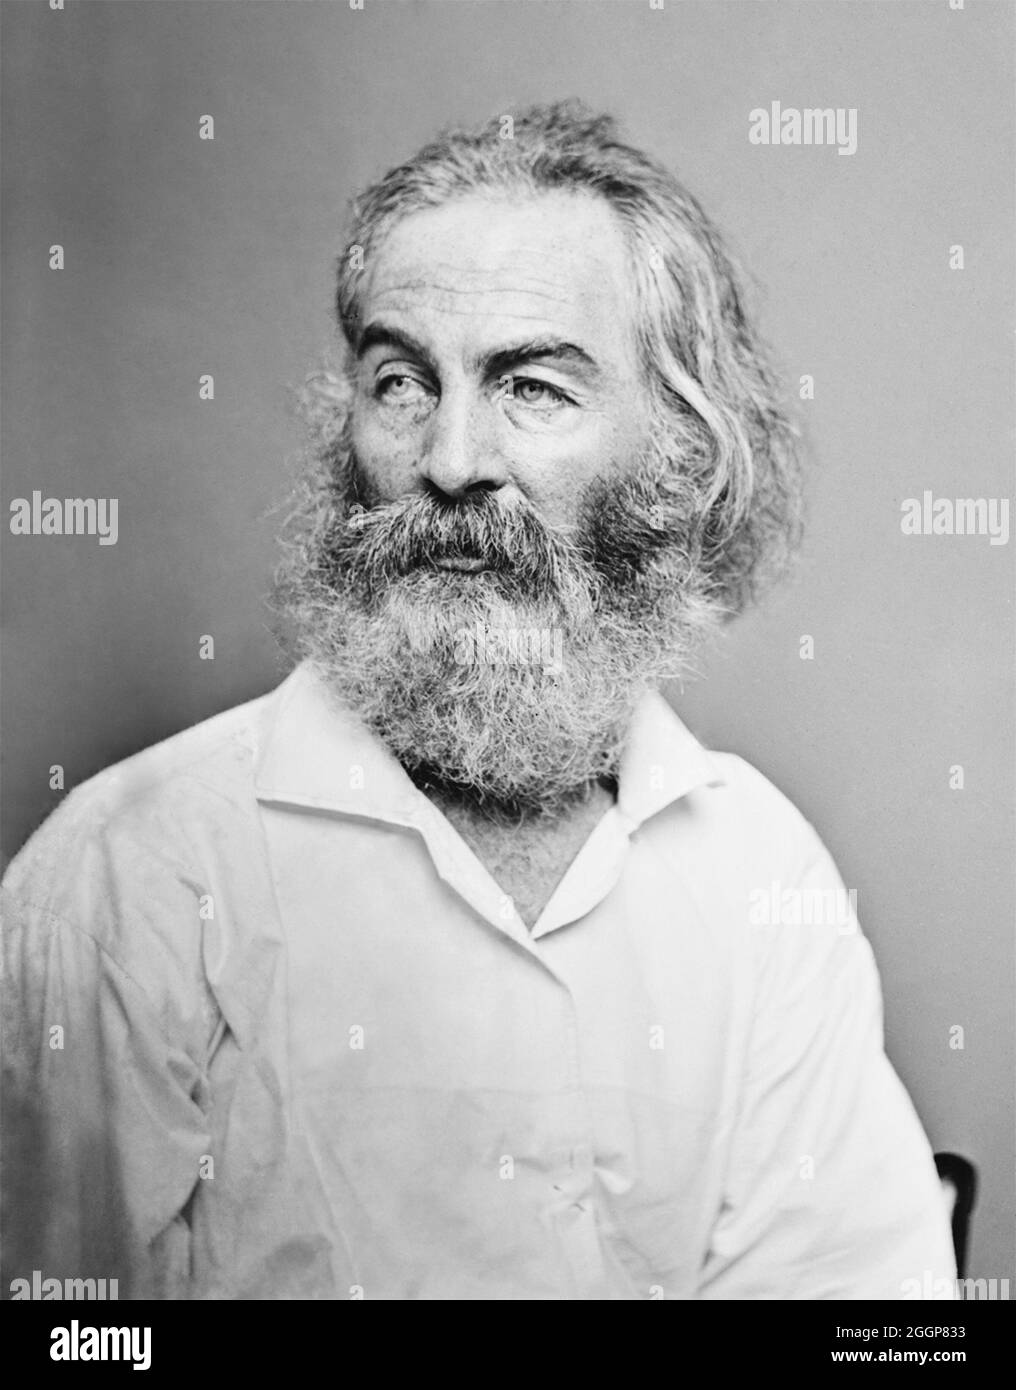 Walt Whitman (1819-1892) poète, journaliste et essayiste américain, plus connu pour sa collection de poésie Leaves of Grass (1855). Banque D'Images